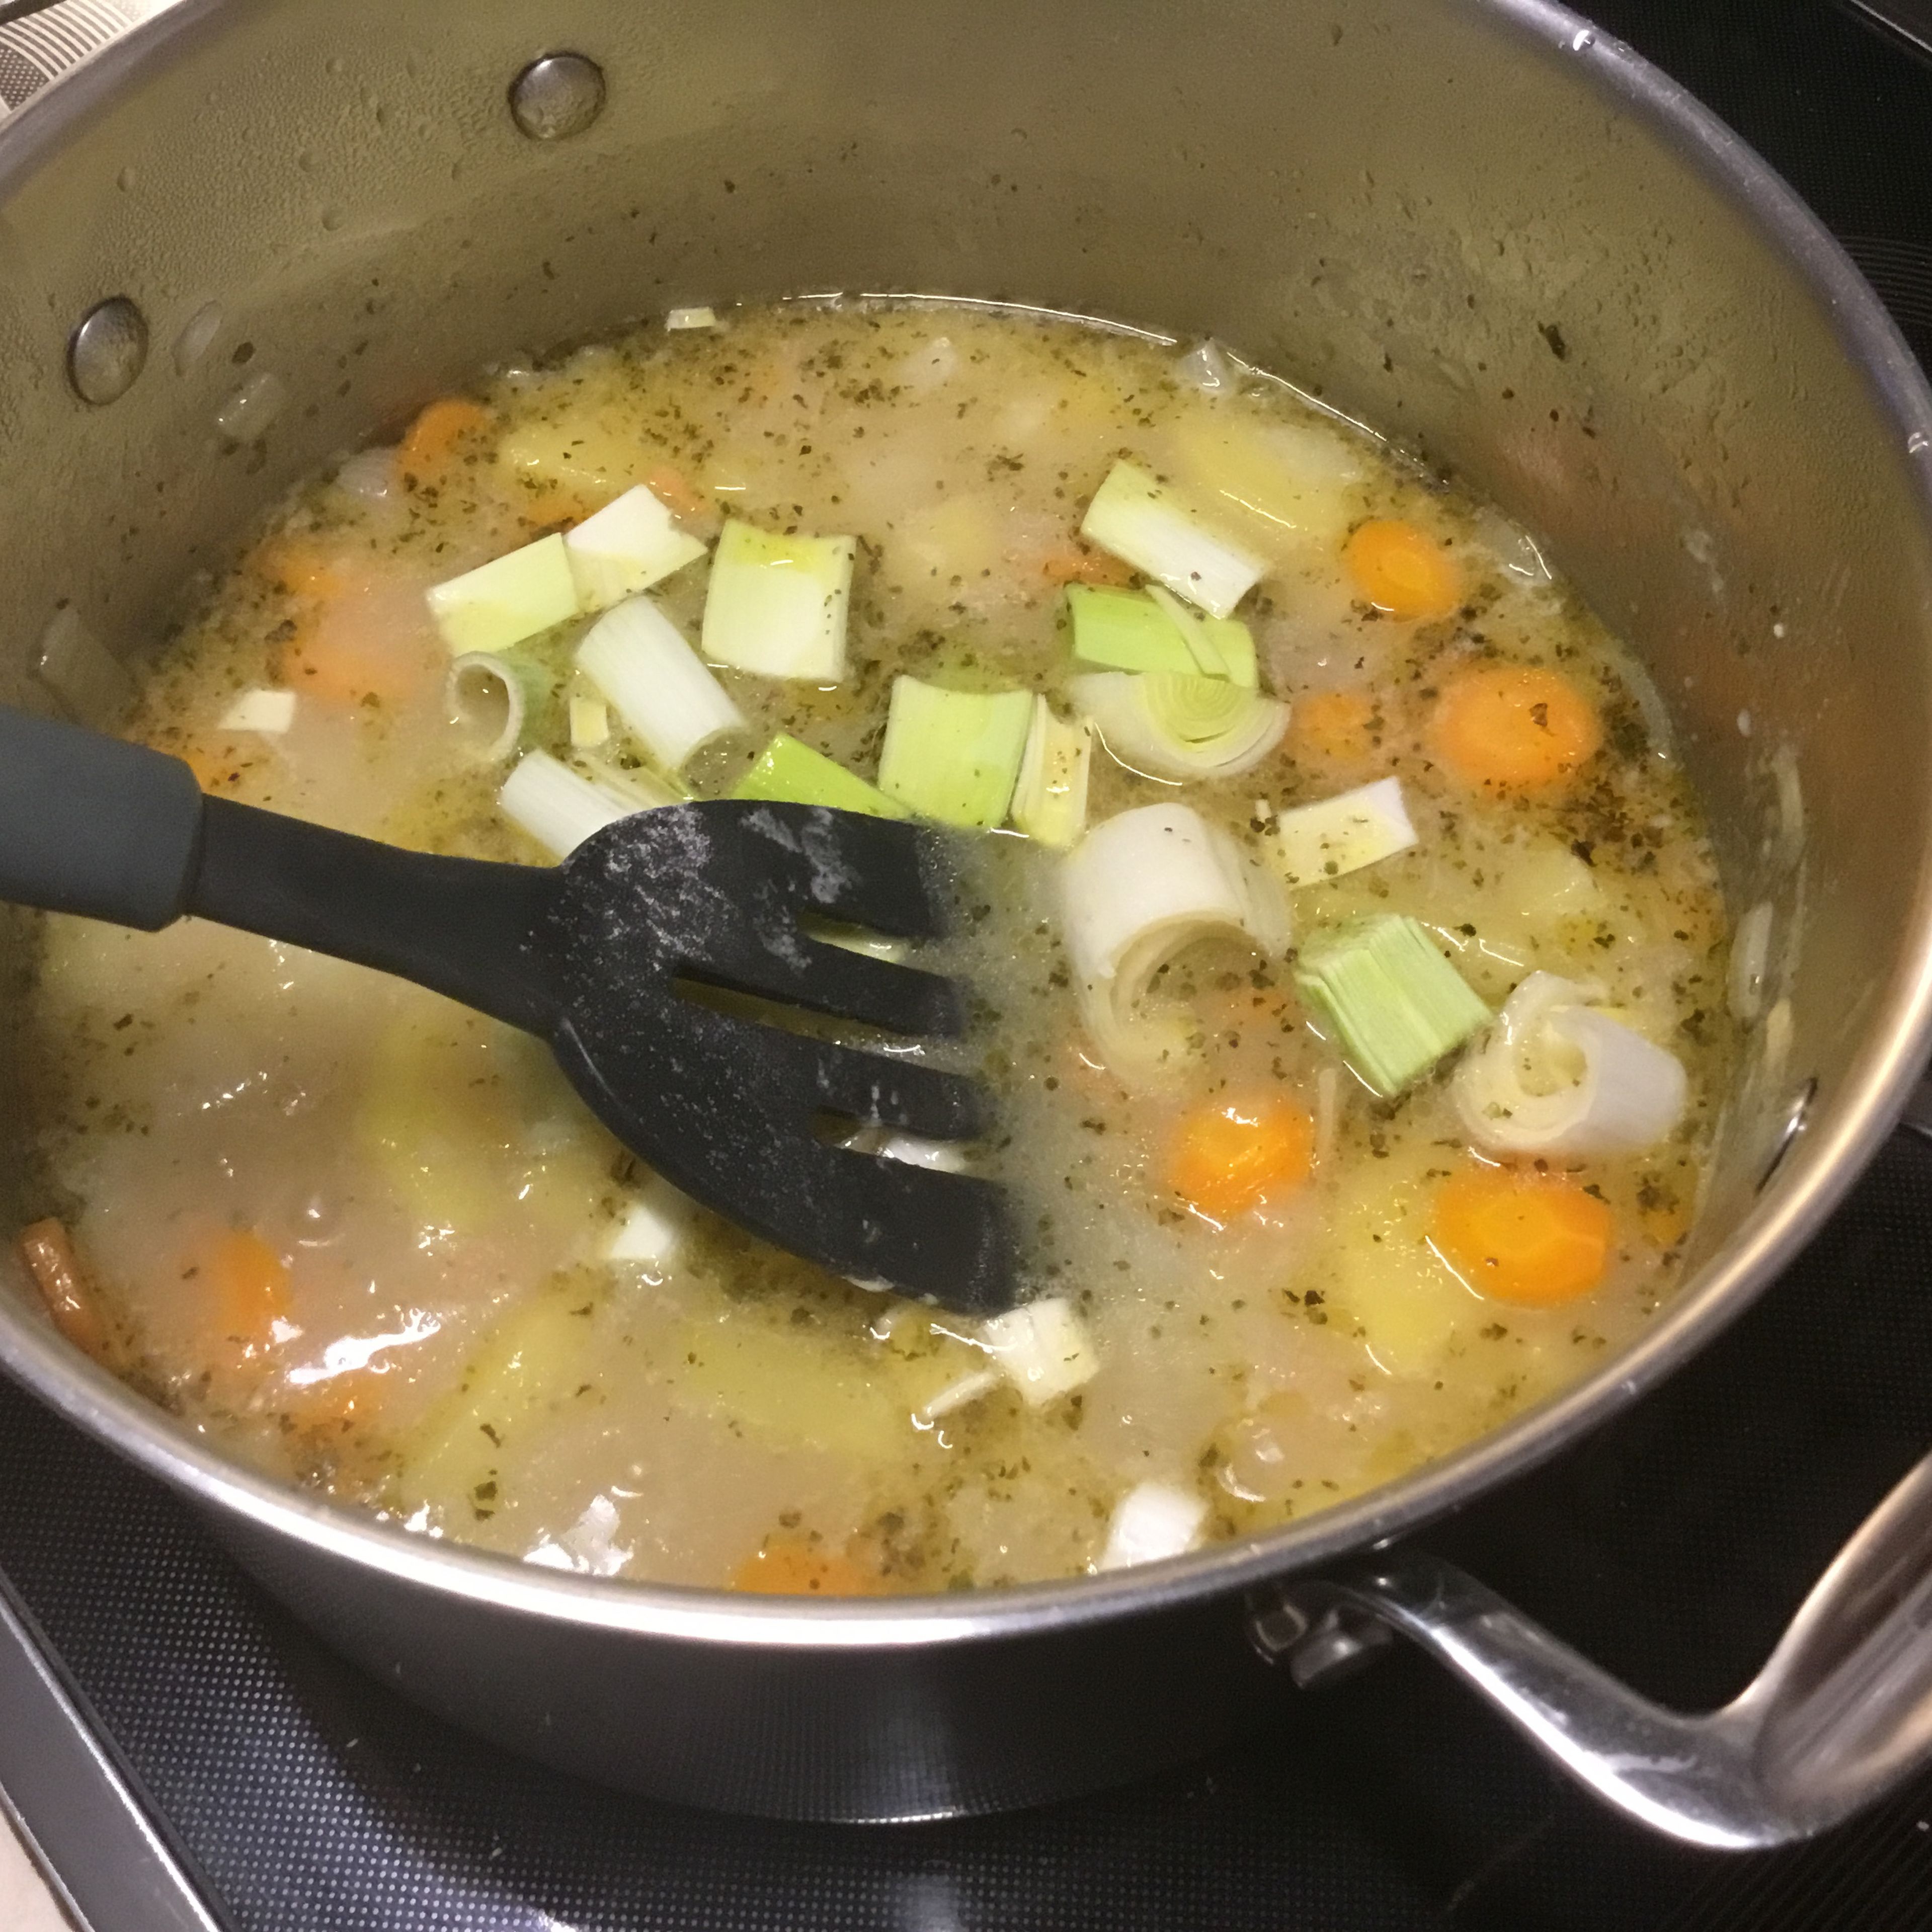 Den Lauch hinzufügen und die Suppe auf niedriger Temperatur köcheln lassen bis die Kartoffeln weich und die Suppe sämig wird.